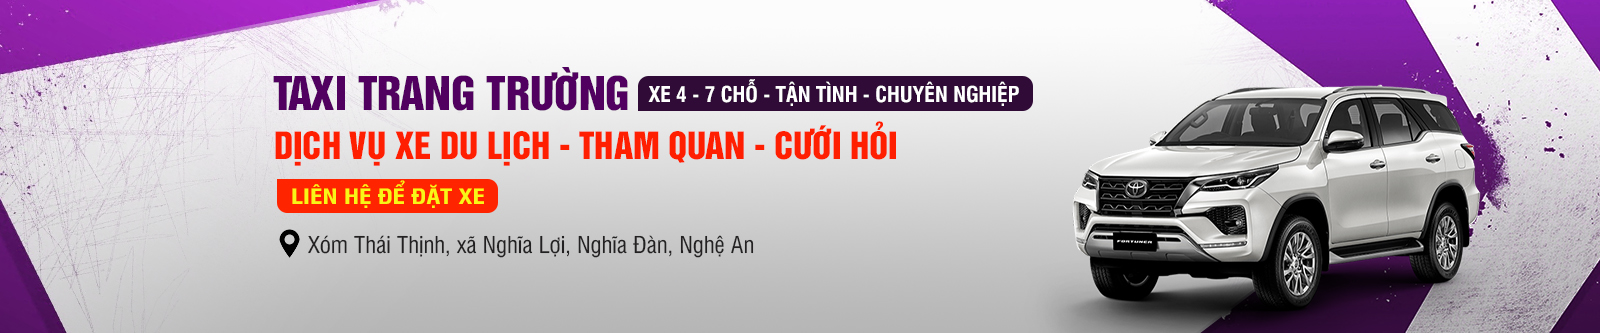 Dịch vụ taxi Trang Trường tuyến Nghệ An - Hà Nội